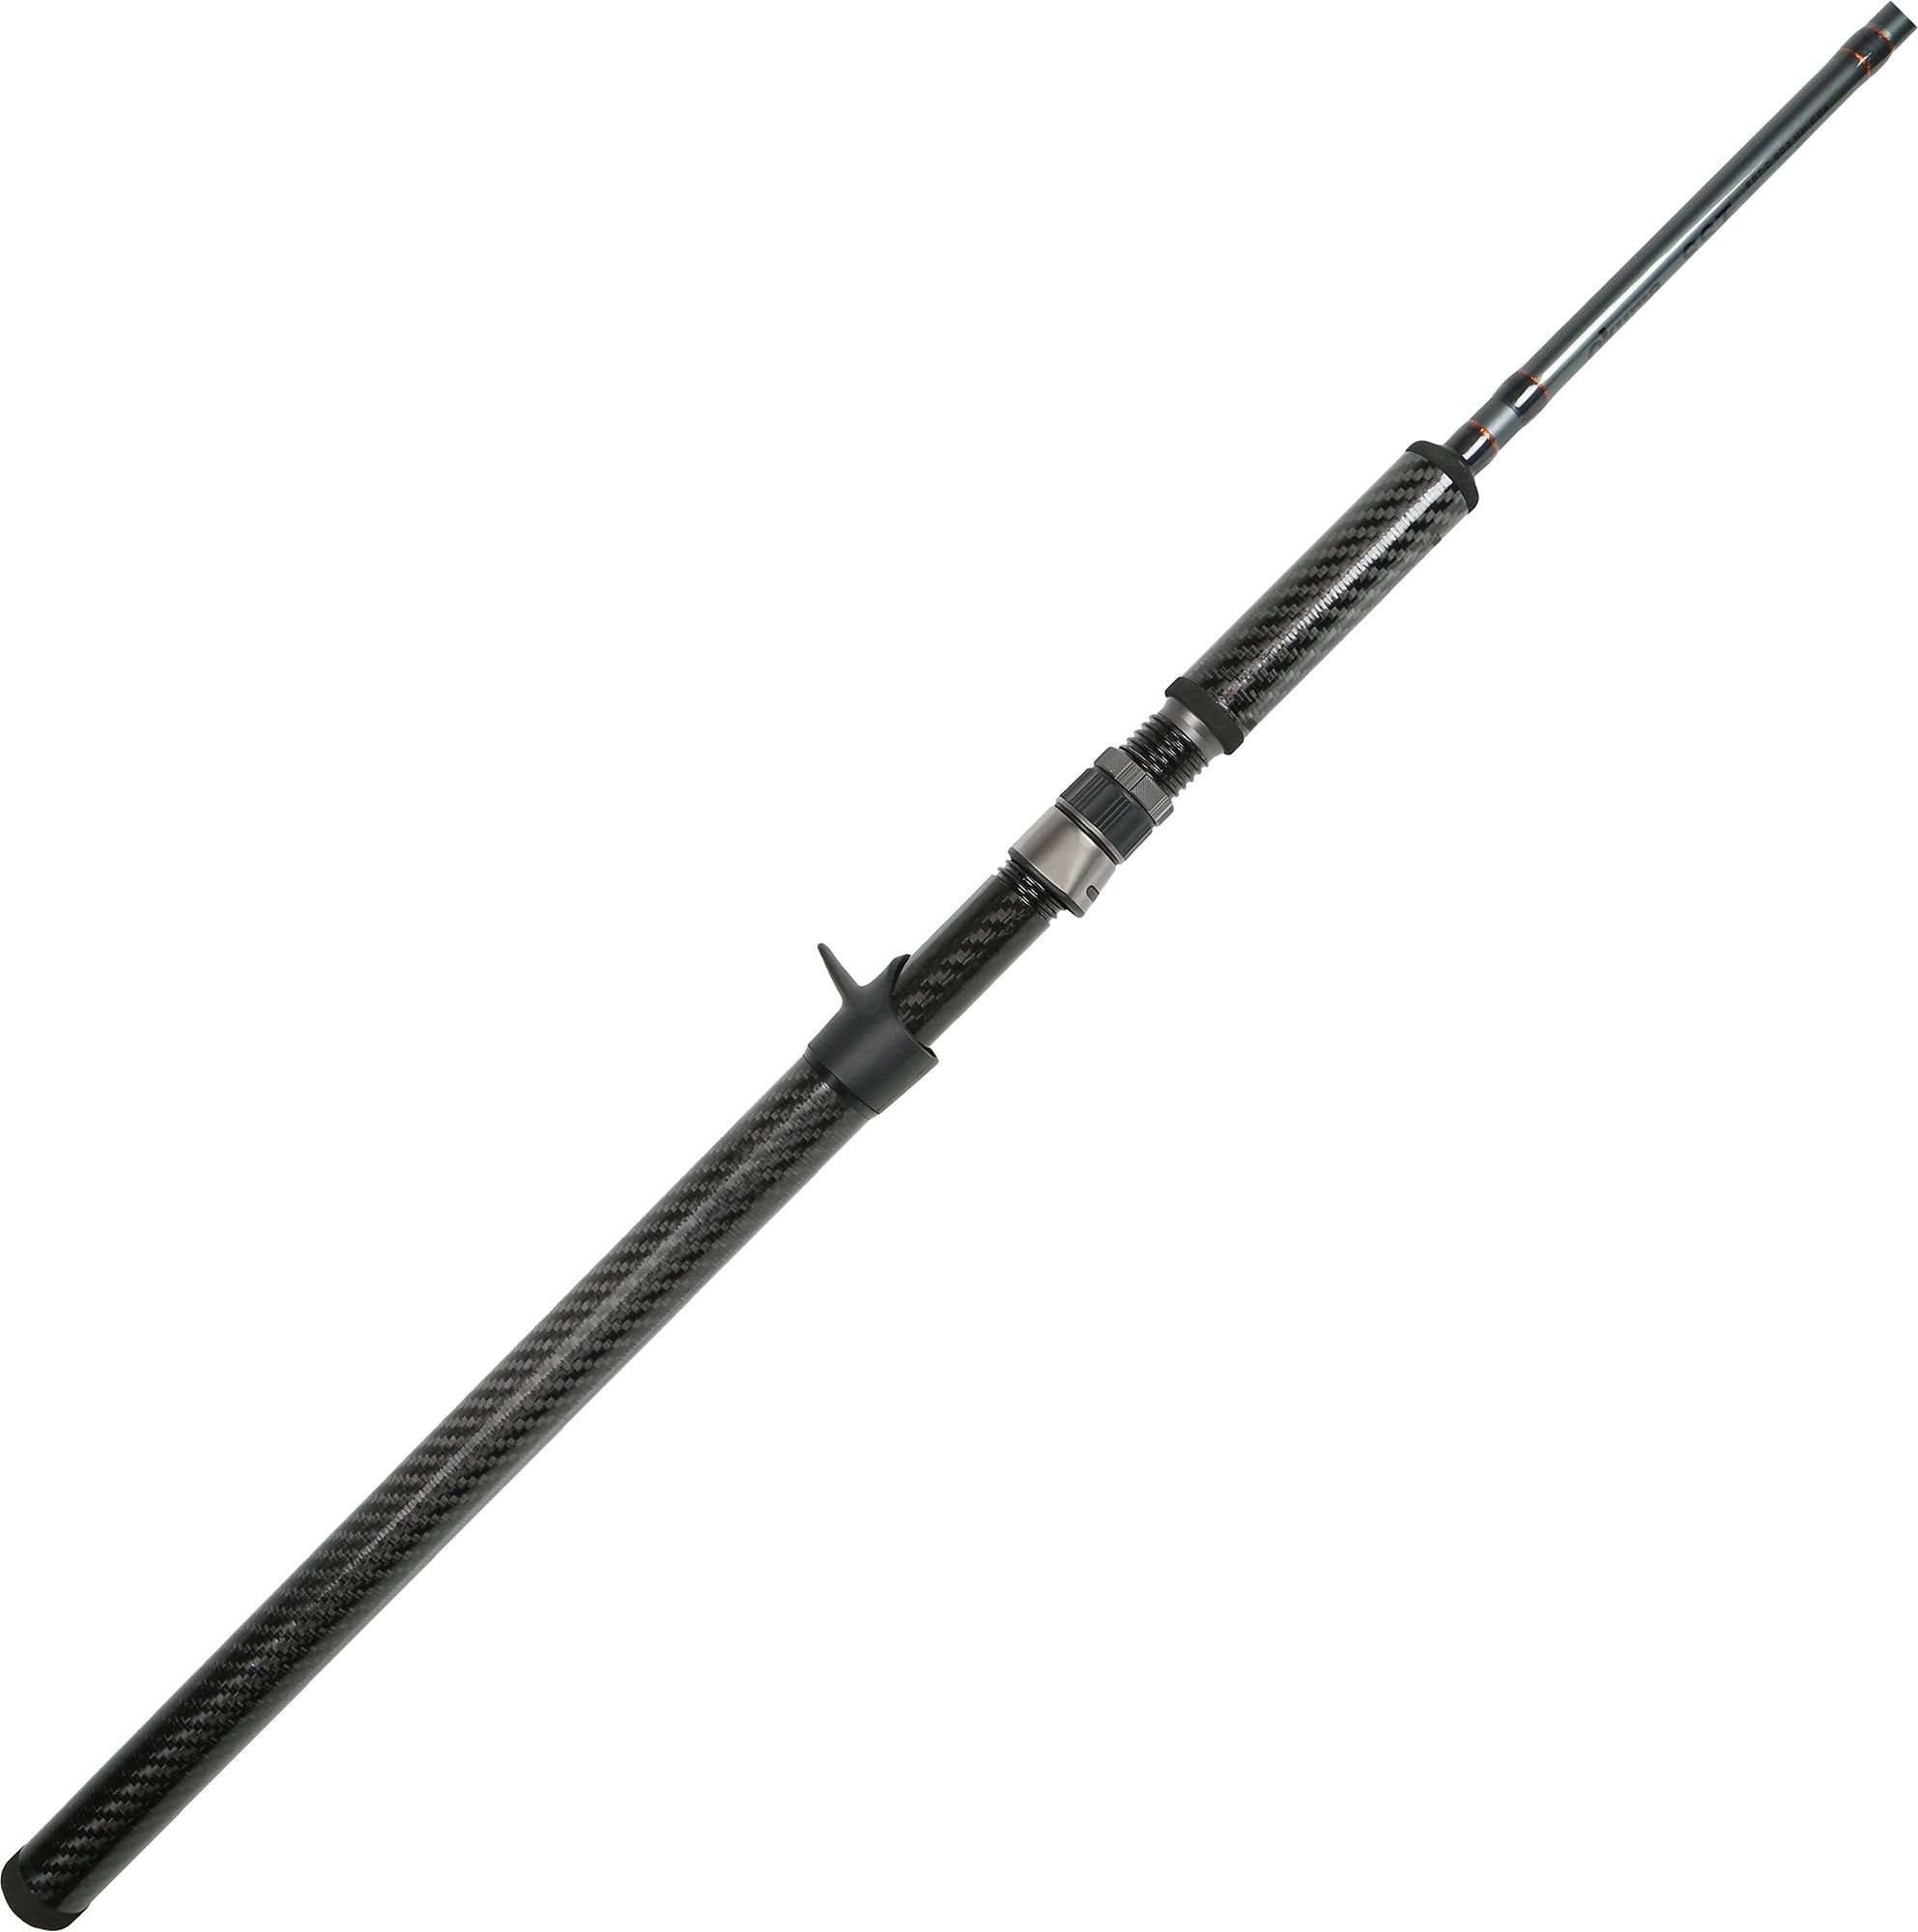 Okuma SST A Series Carbon Casting Rod